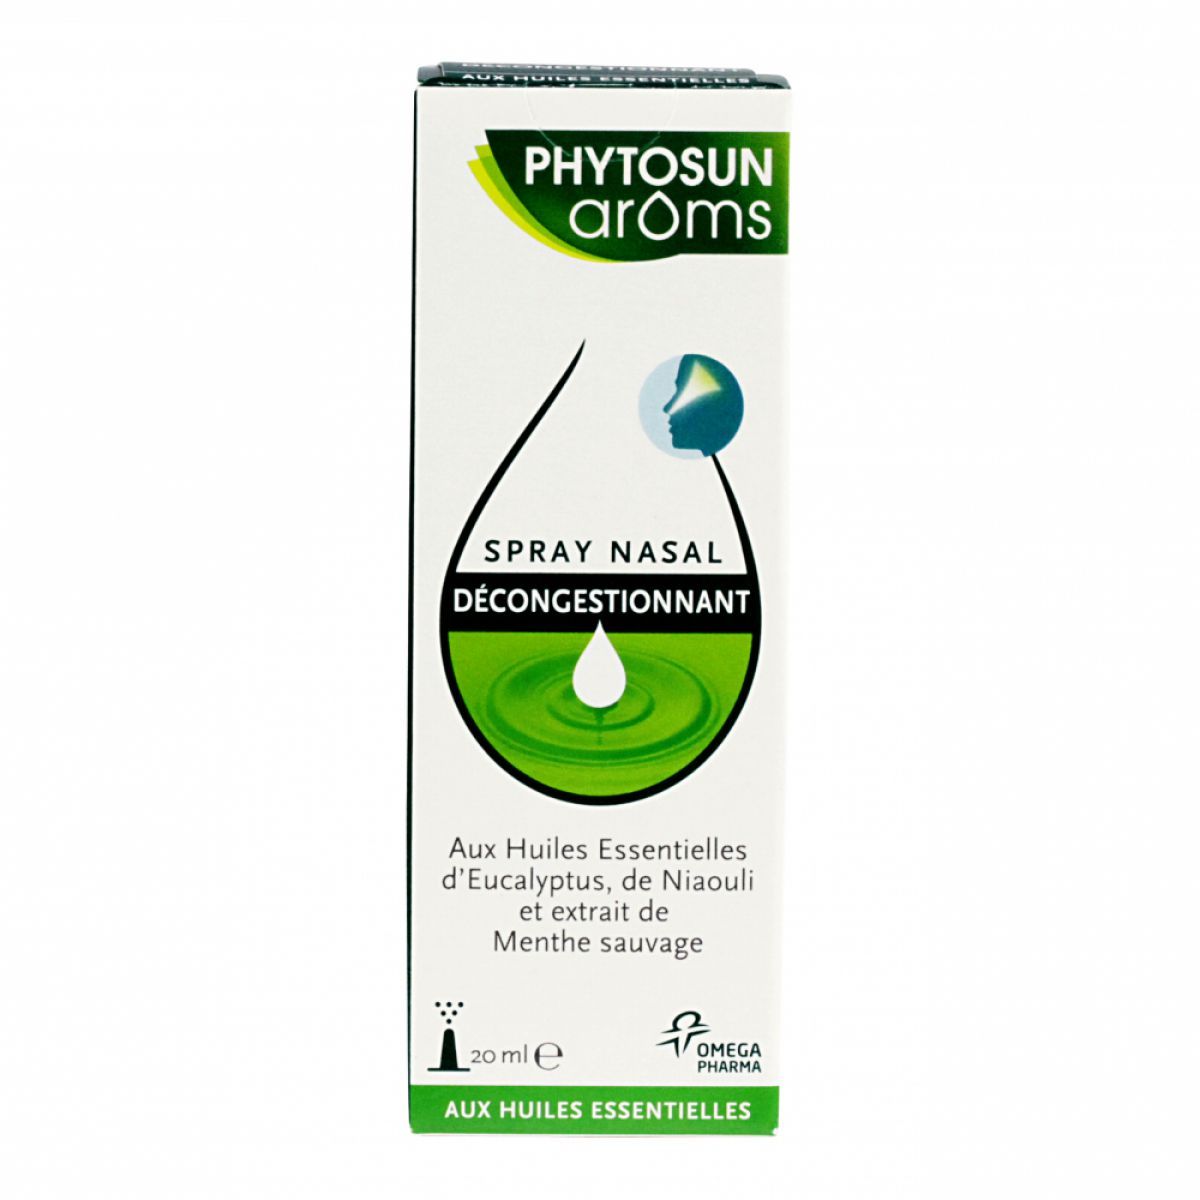 Phytosun Arôms spray nasal décongestionnant - Nez bouché